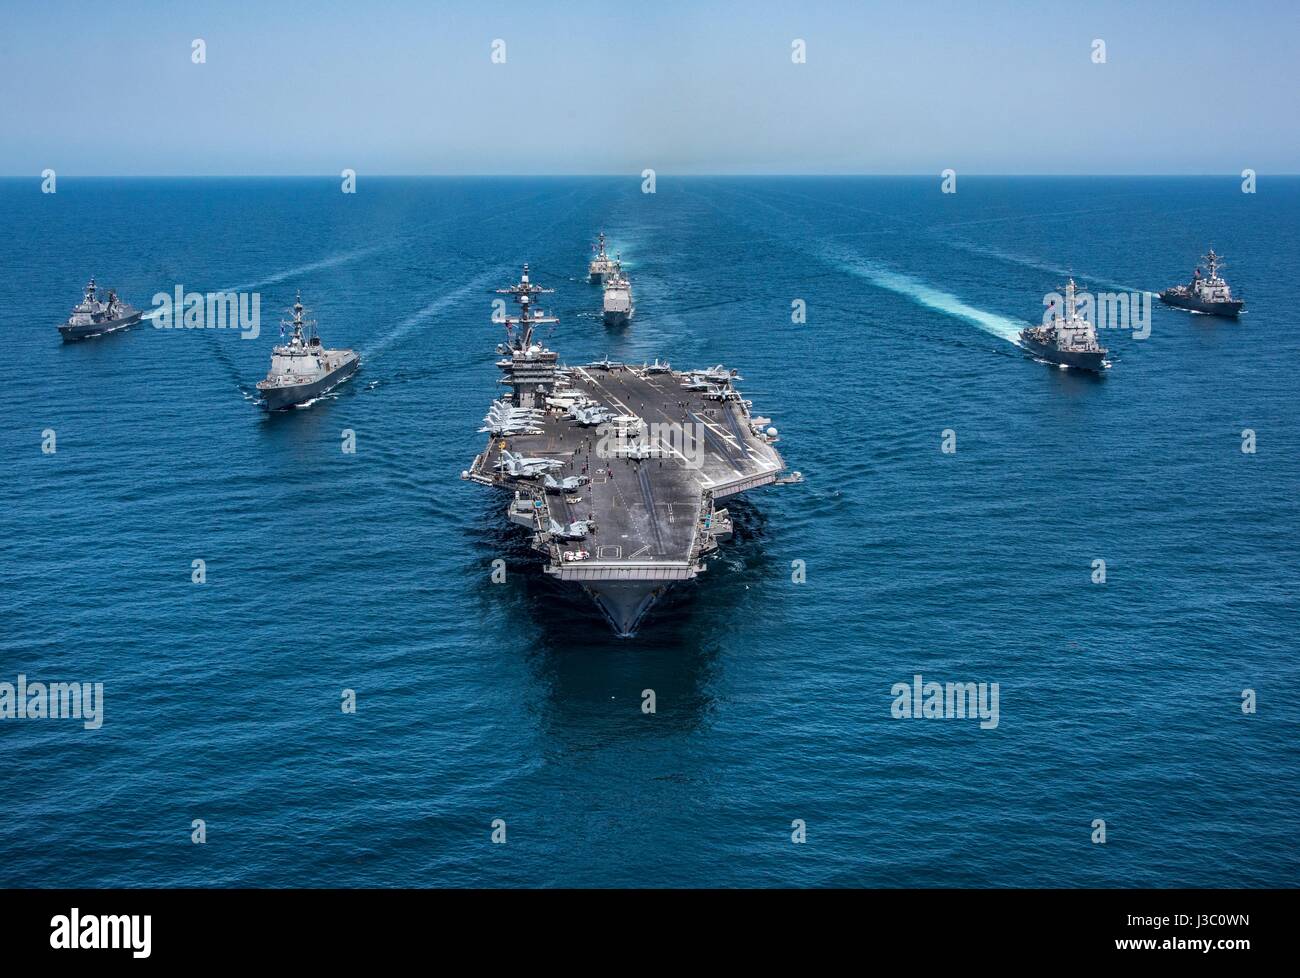 La Marina de los EE.UU. clase Nimitz portaaviones USS Carl Vinson está en marcha con una escolta de buques de guerra de los EE.UU. y Corea del Sur durante las patrullas Mayo 3, 2017 frente a las costas de Corea. Foto de stock